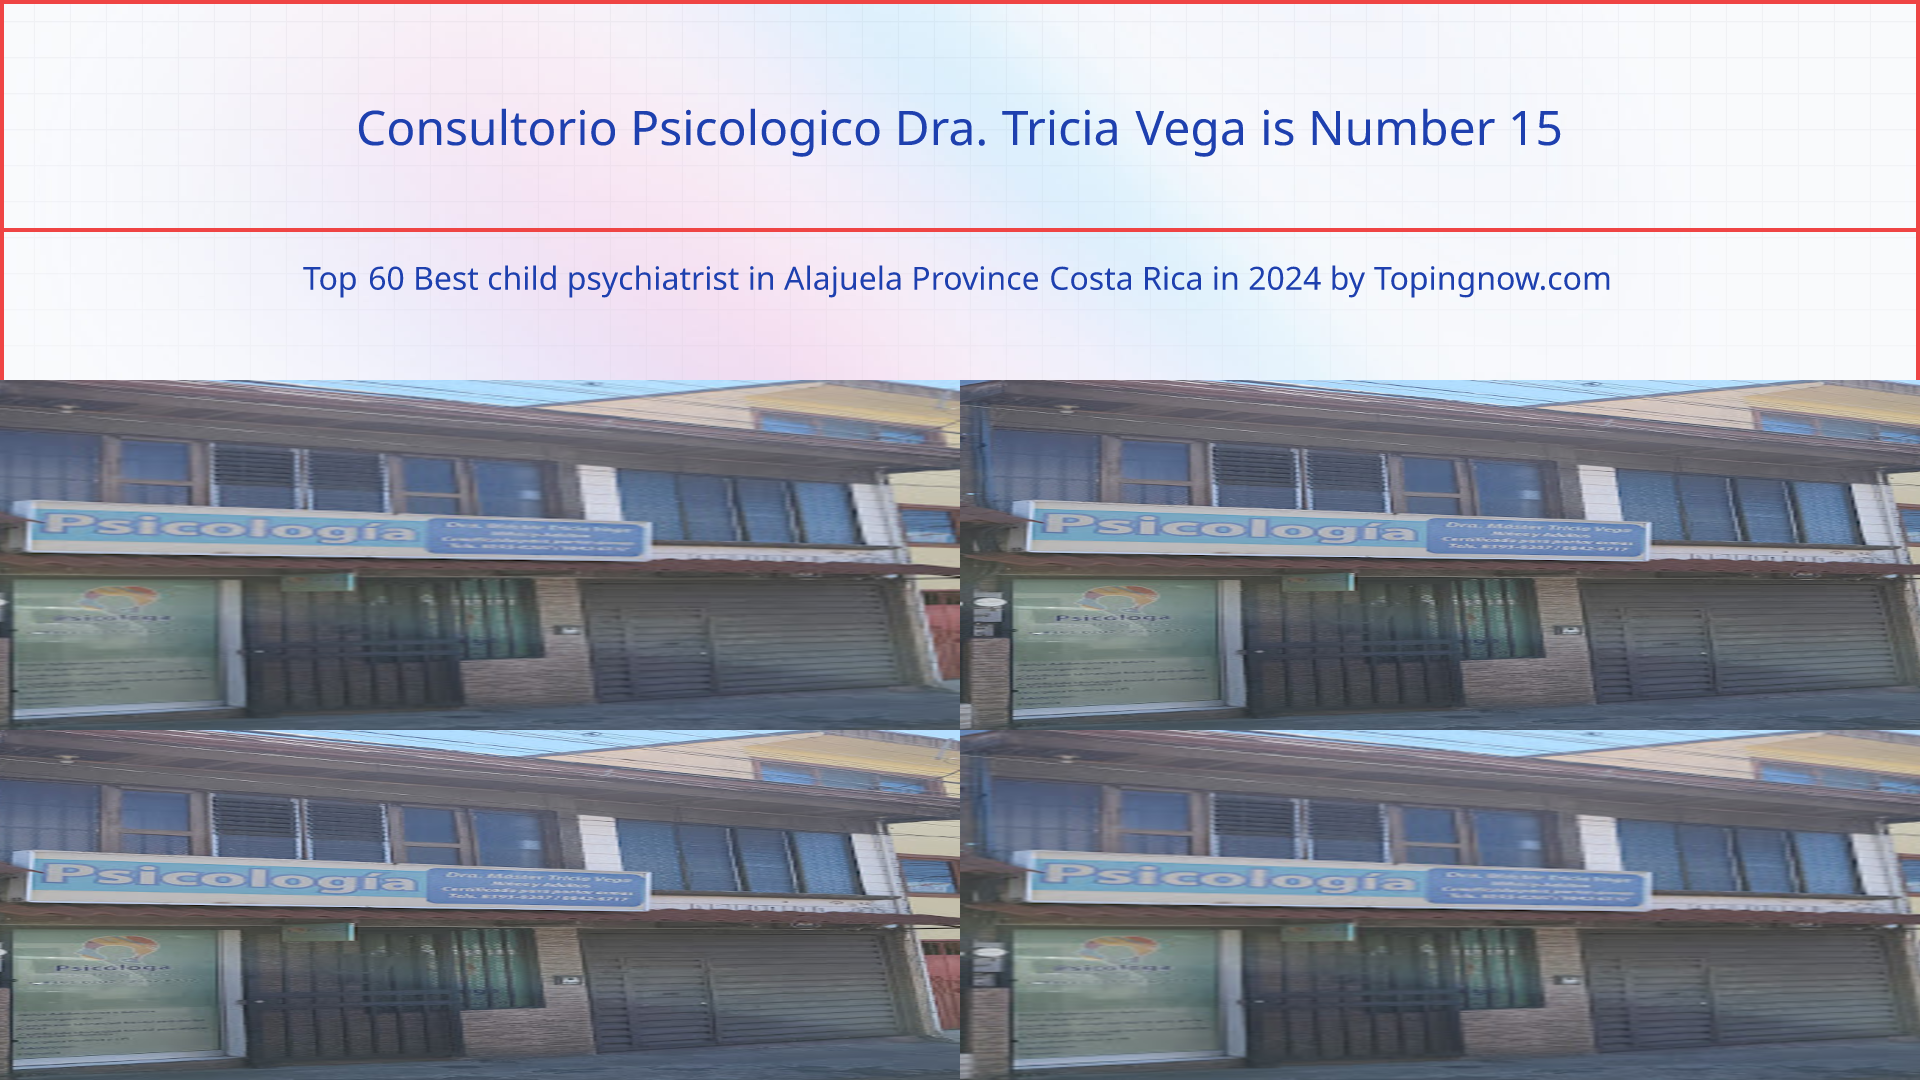 Consultorio Psicologico Dra. Tricia Vega: Top 60 Best child psychiatrist in Alajuela Province Costa Rica in 2024